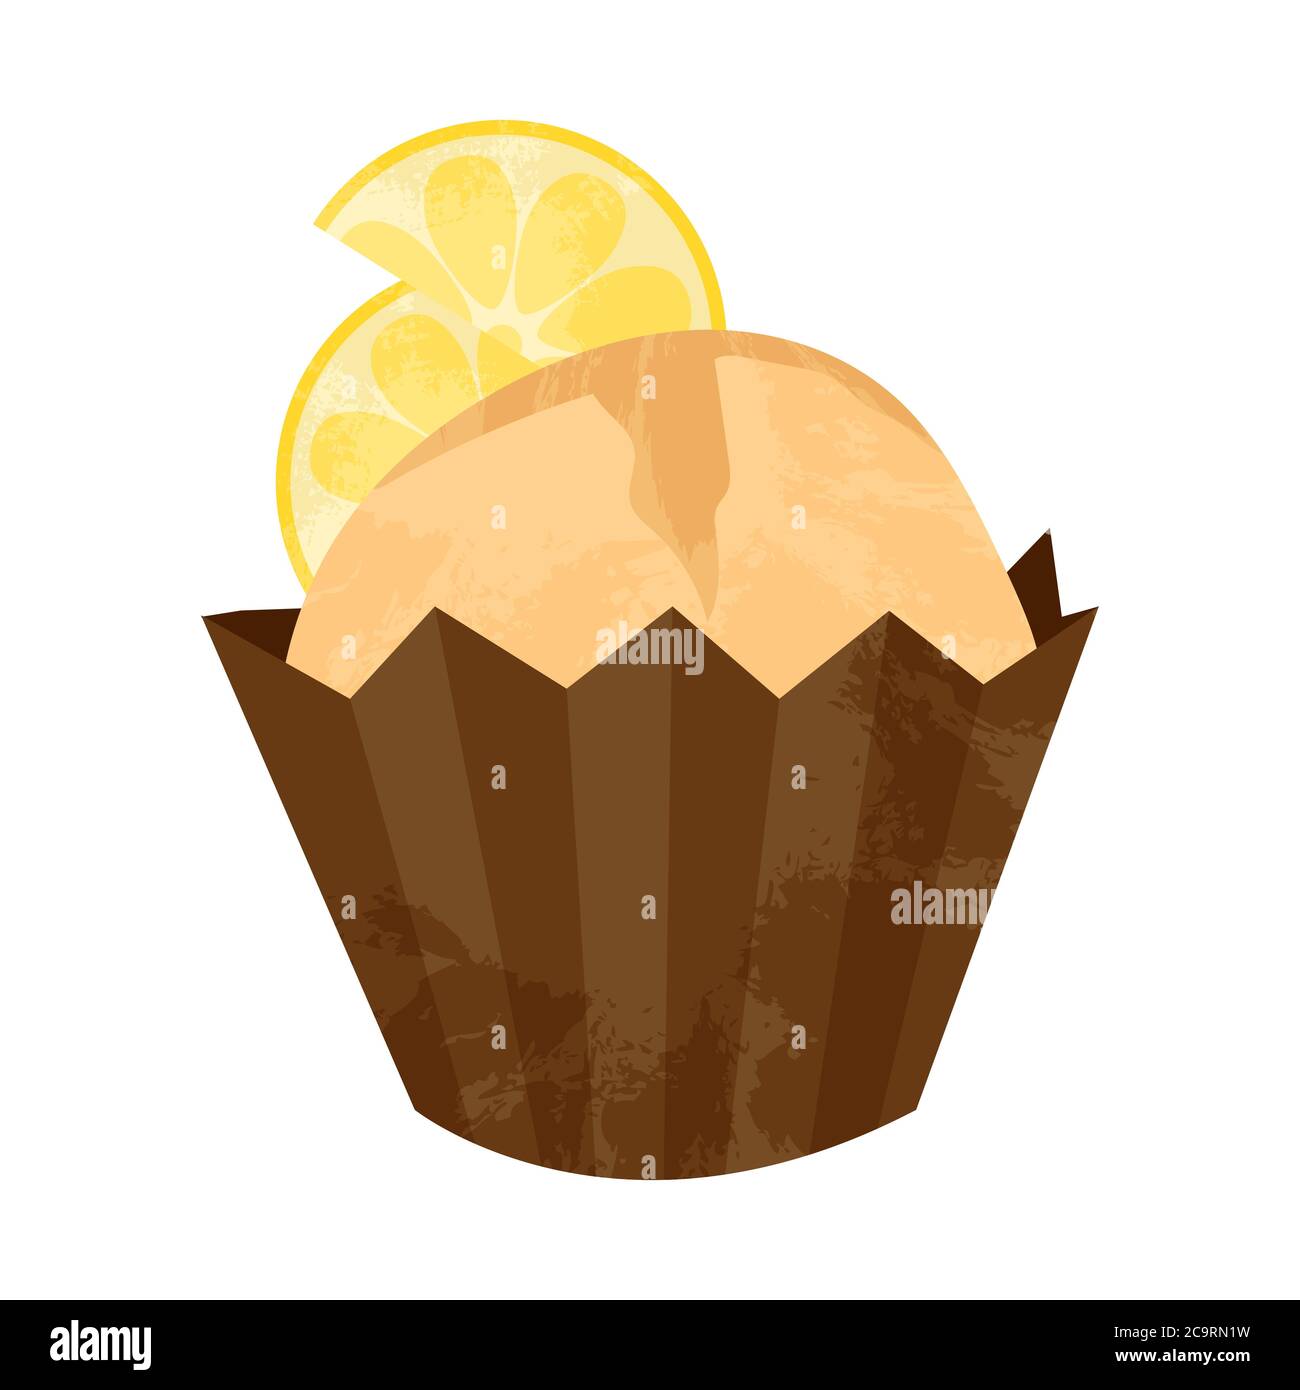 Un petit gâteau tiré à la main ou un muffin au citron. Illustration de dessin animé vectoriel à plat. Élément pour les cartes de vœux, les affiches, les autocollants et les articles saisonniers Illustration de Vecteur